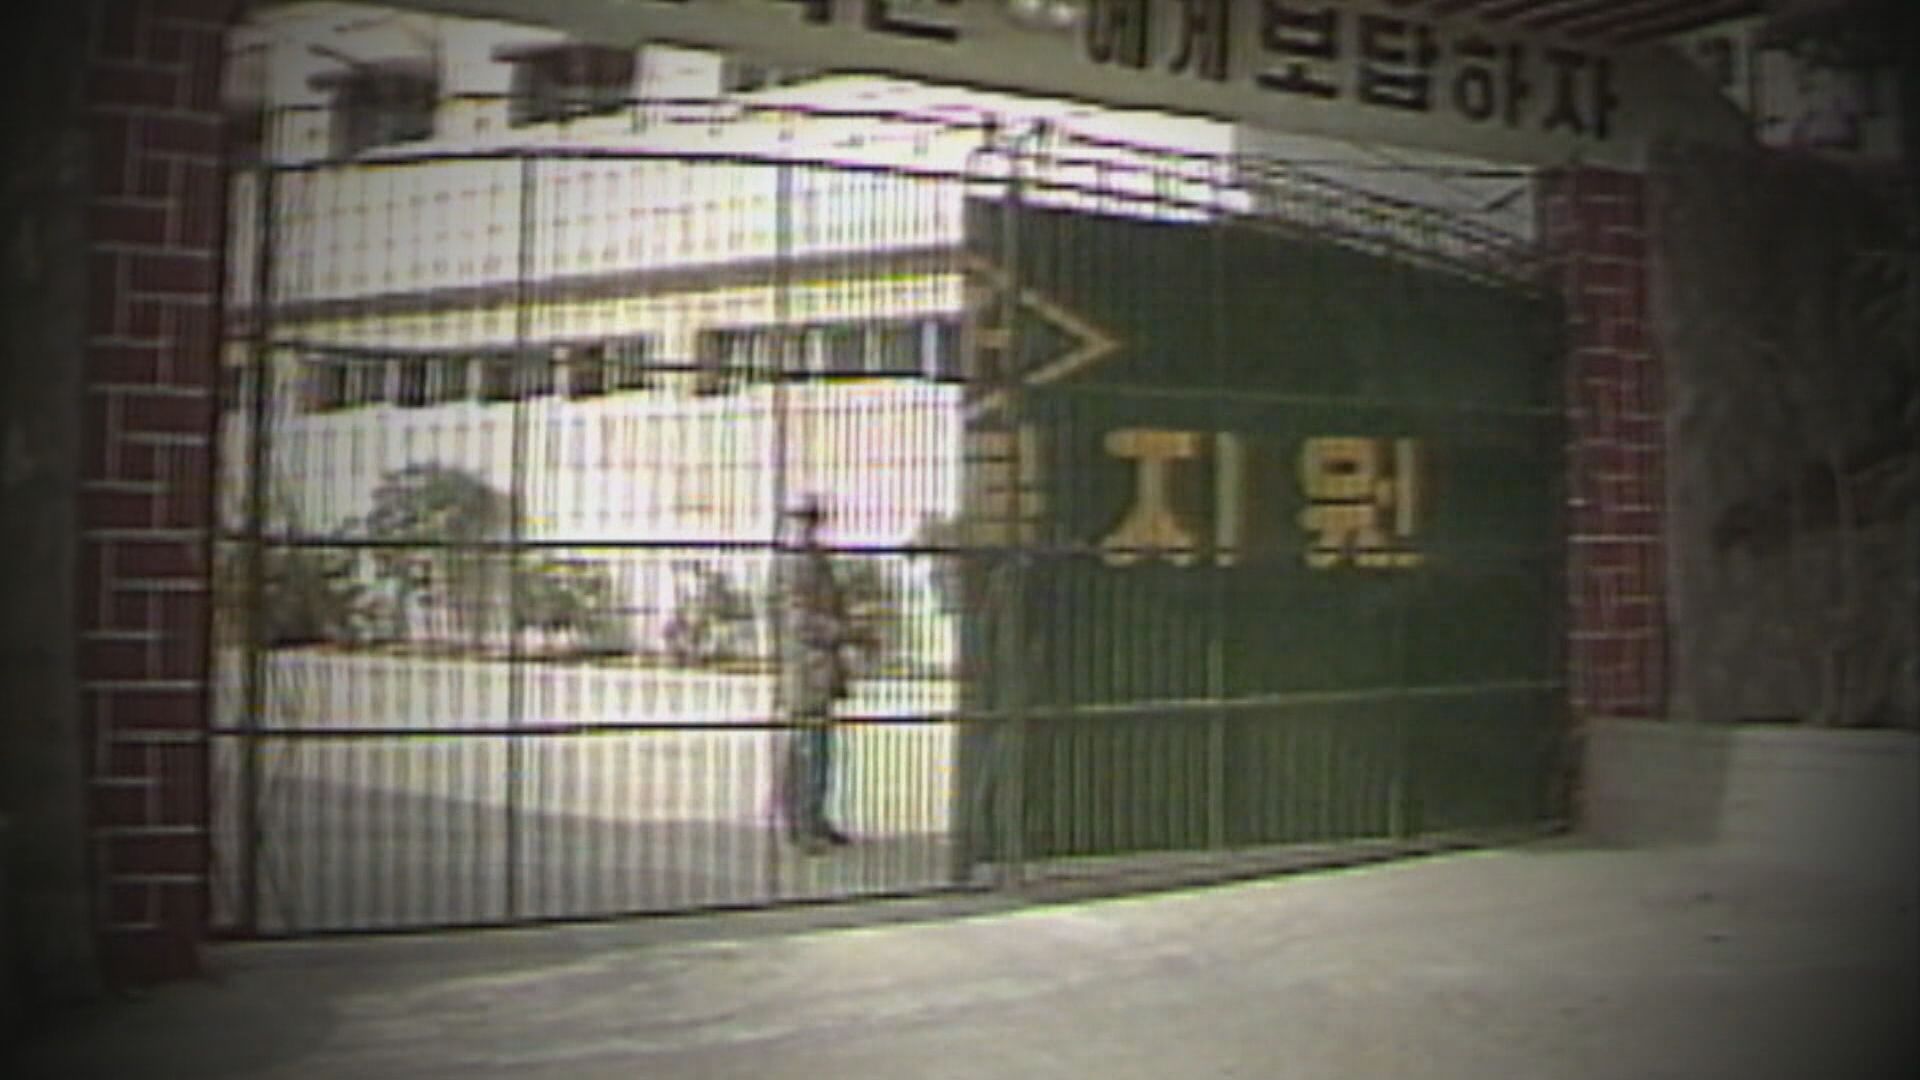 형제복지원 사건은 1970~1980년대 부산 형제복지원에서 일어난 불법 감금과 강제노역, 학대 등의 인권 유린을 일컫는다. 